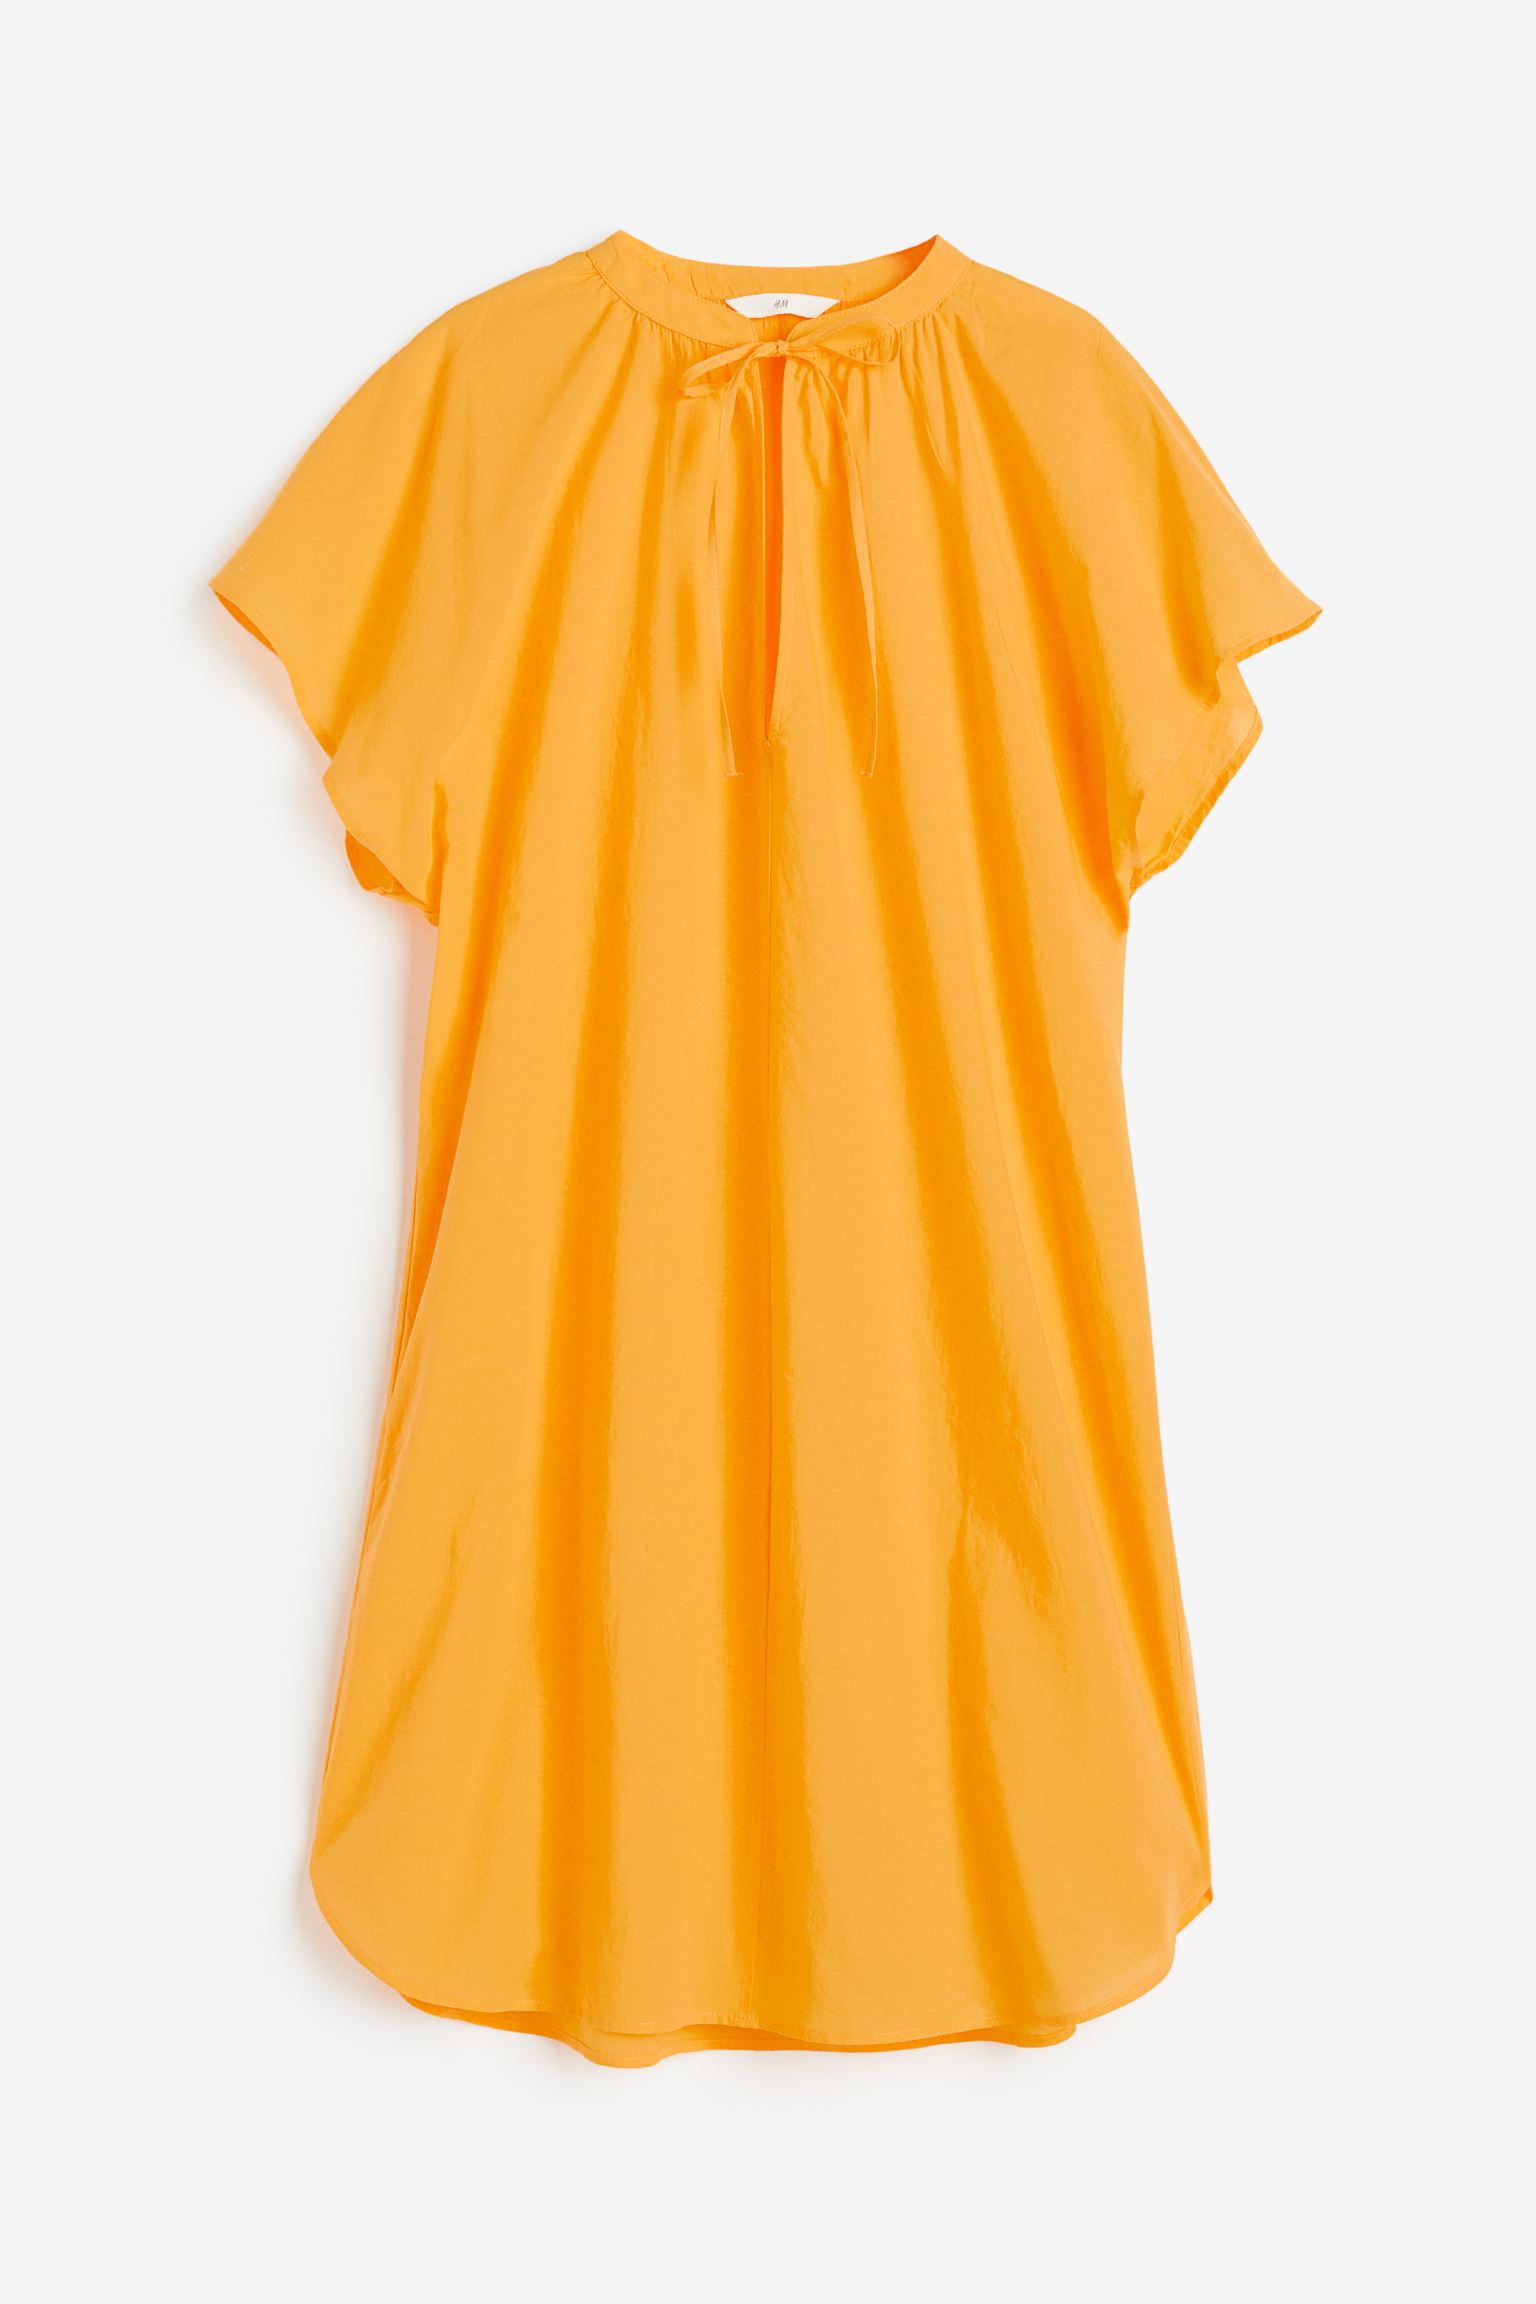 Dieses helle Tunikakleid ist bei H&M von 17,99 £ auf 10 £ gesunken